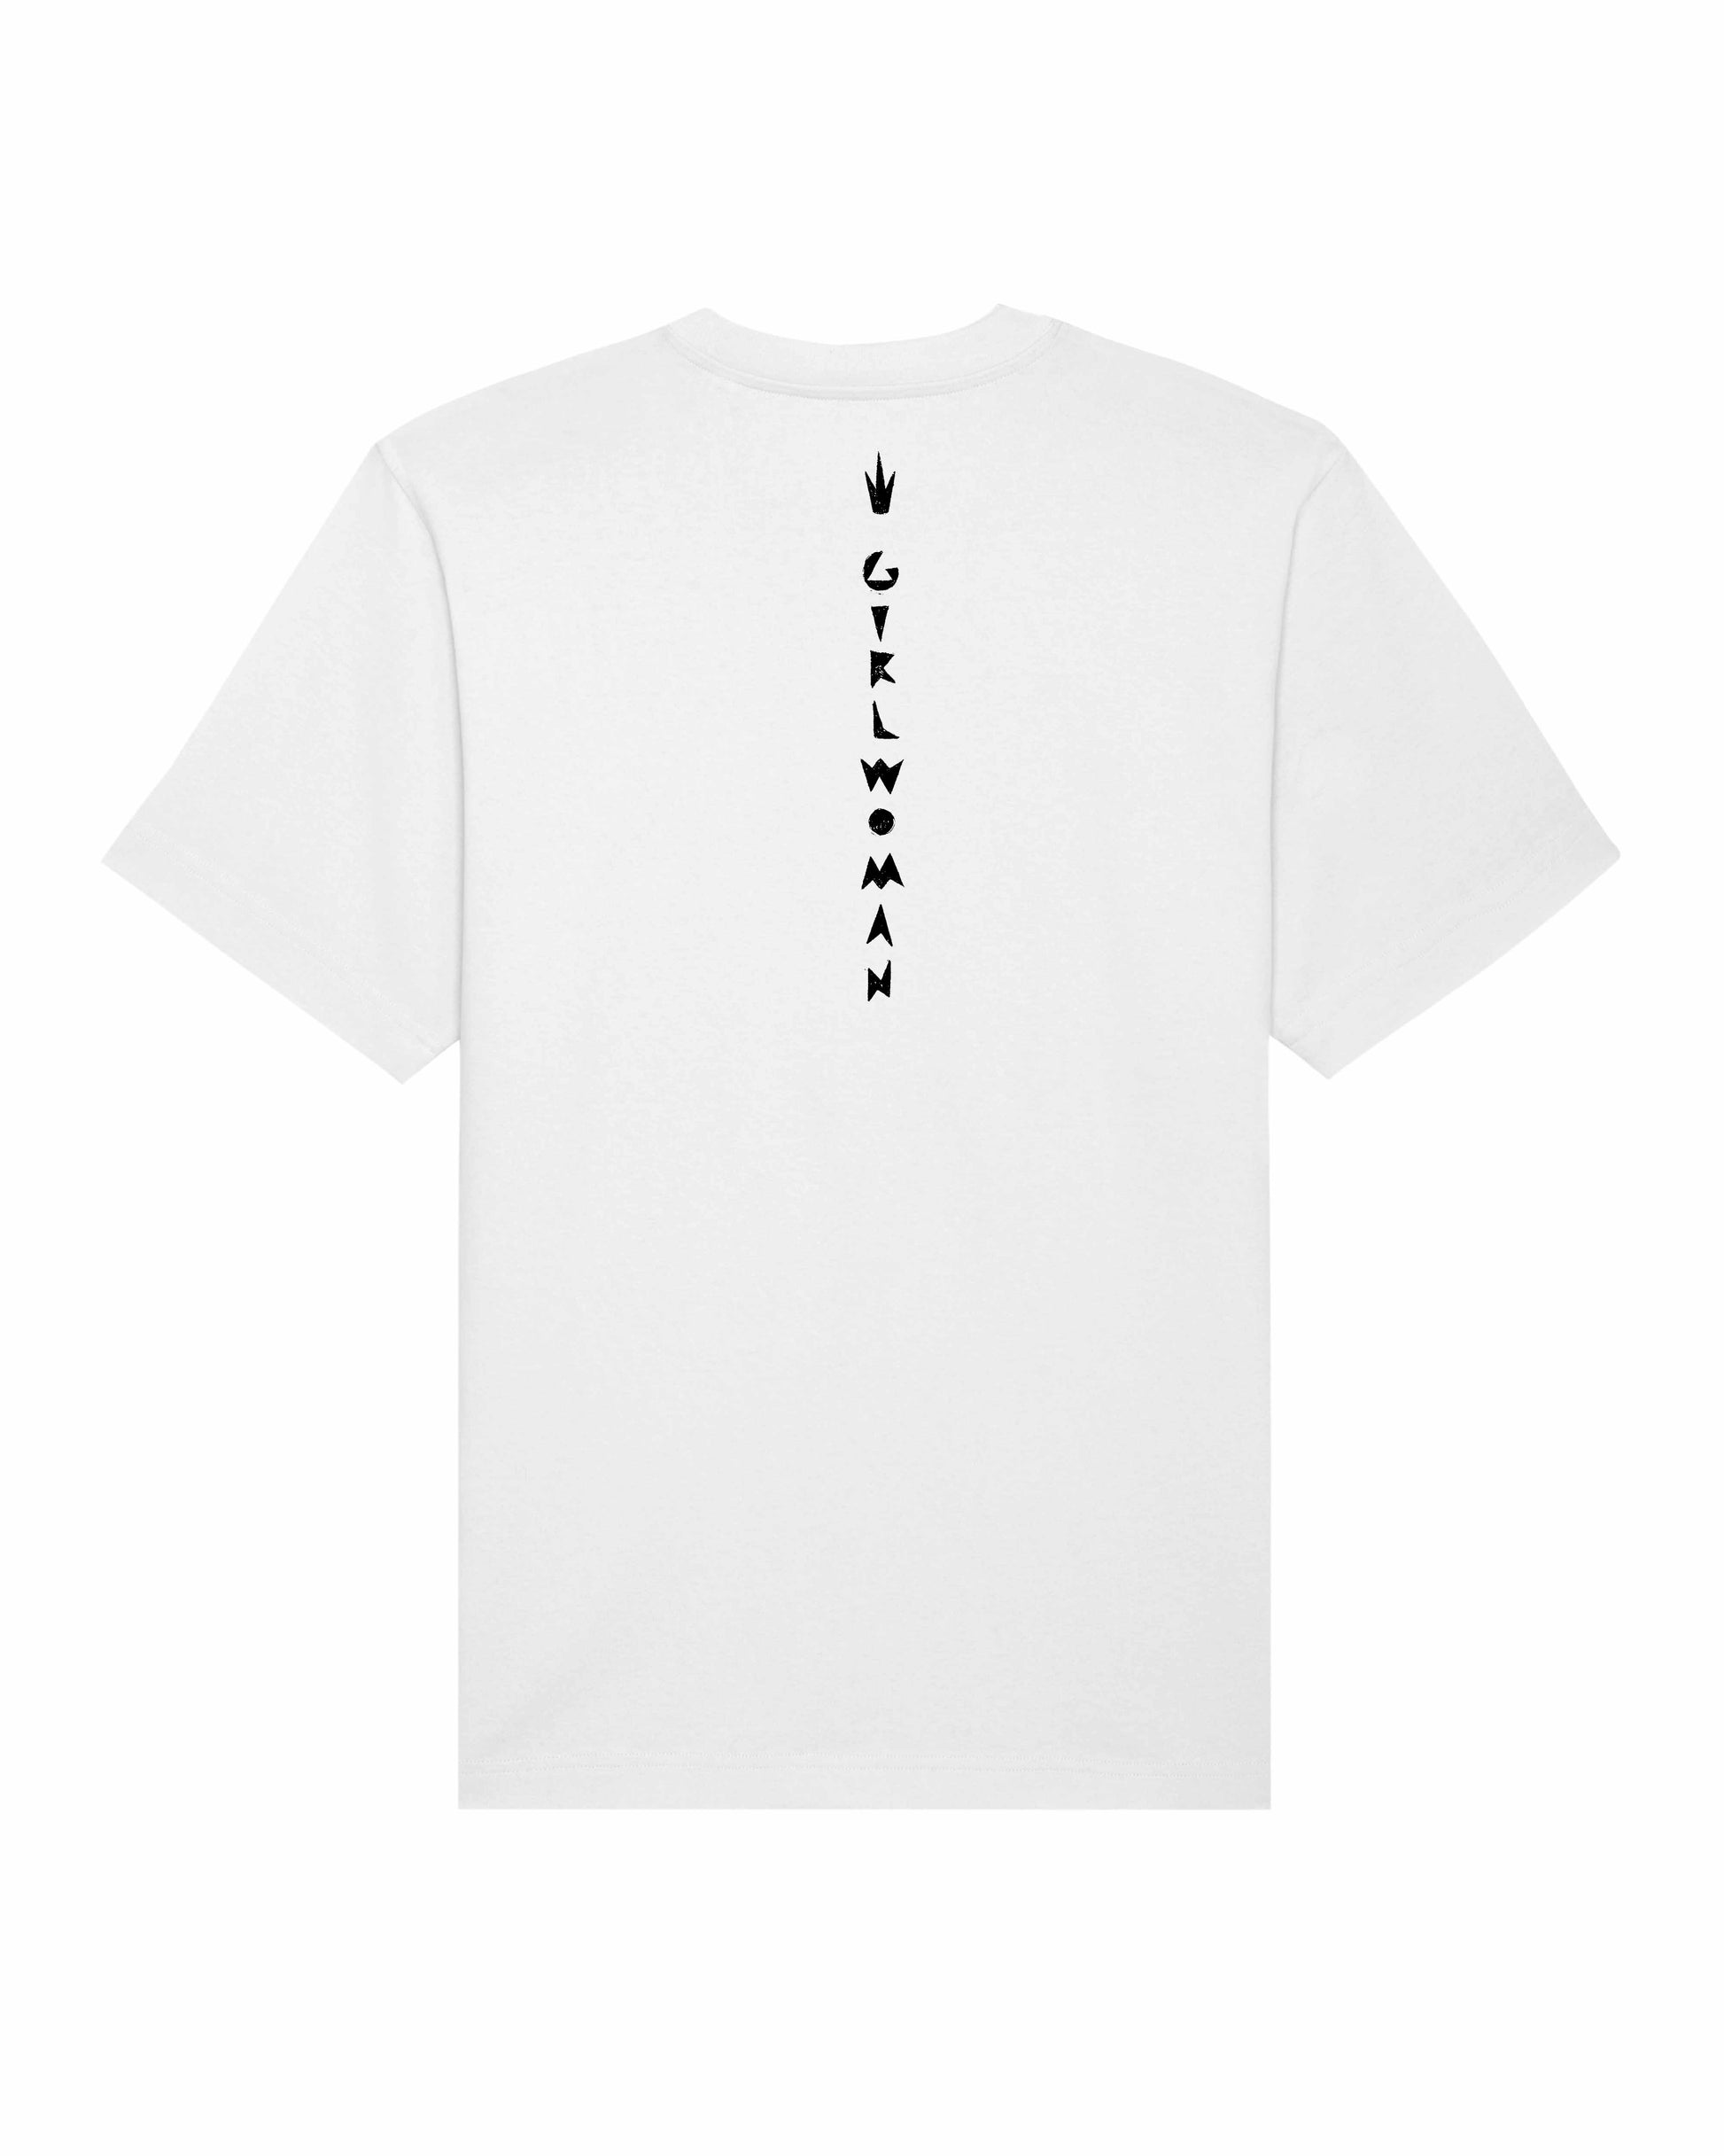 "Teleman" T-Shirt Girlwoman Merchandise. Oversized Fit. Schwere Stoffqualität 100% Cotton.